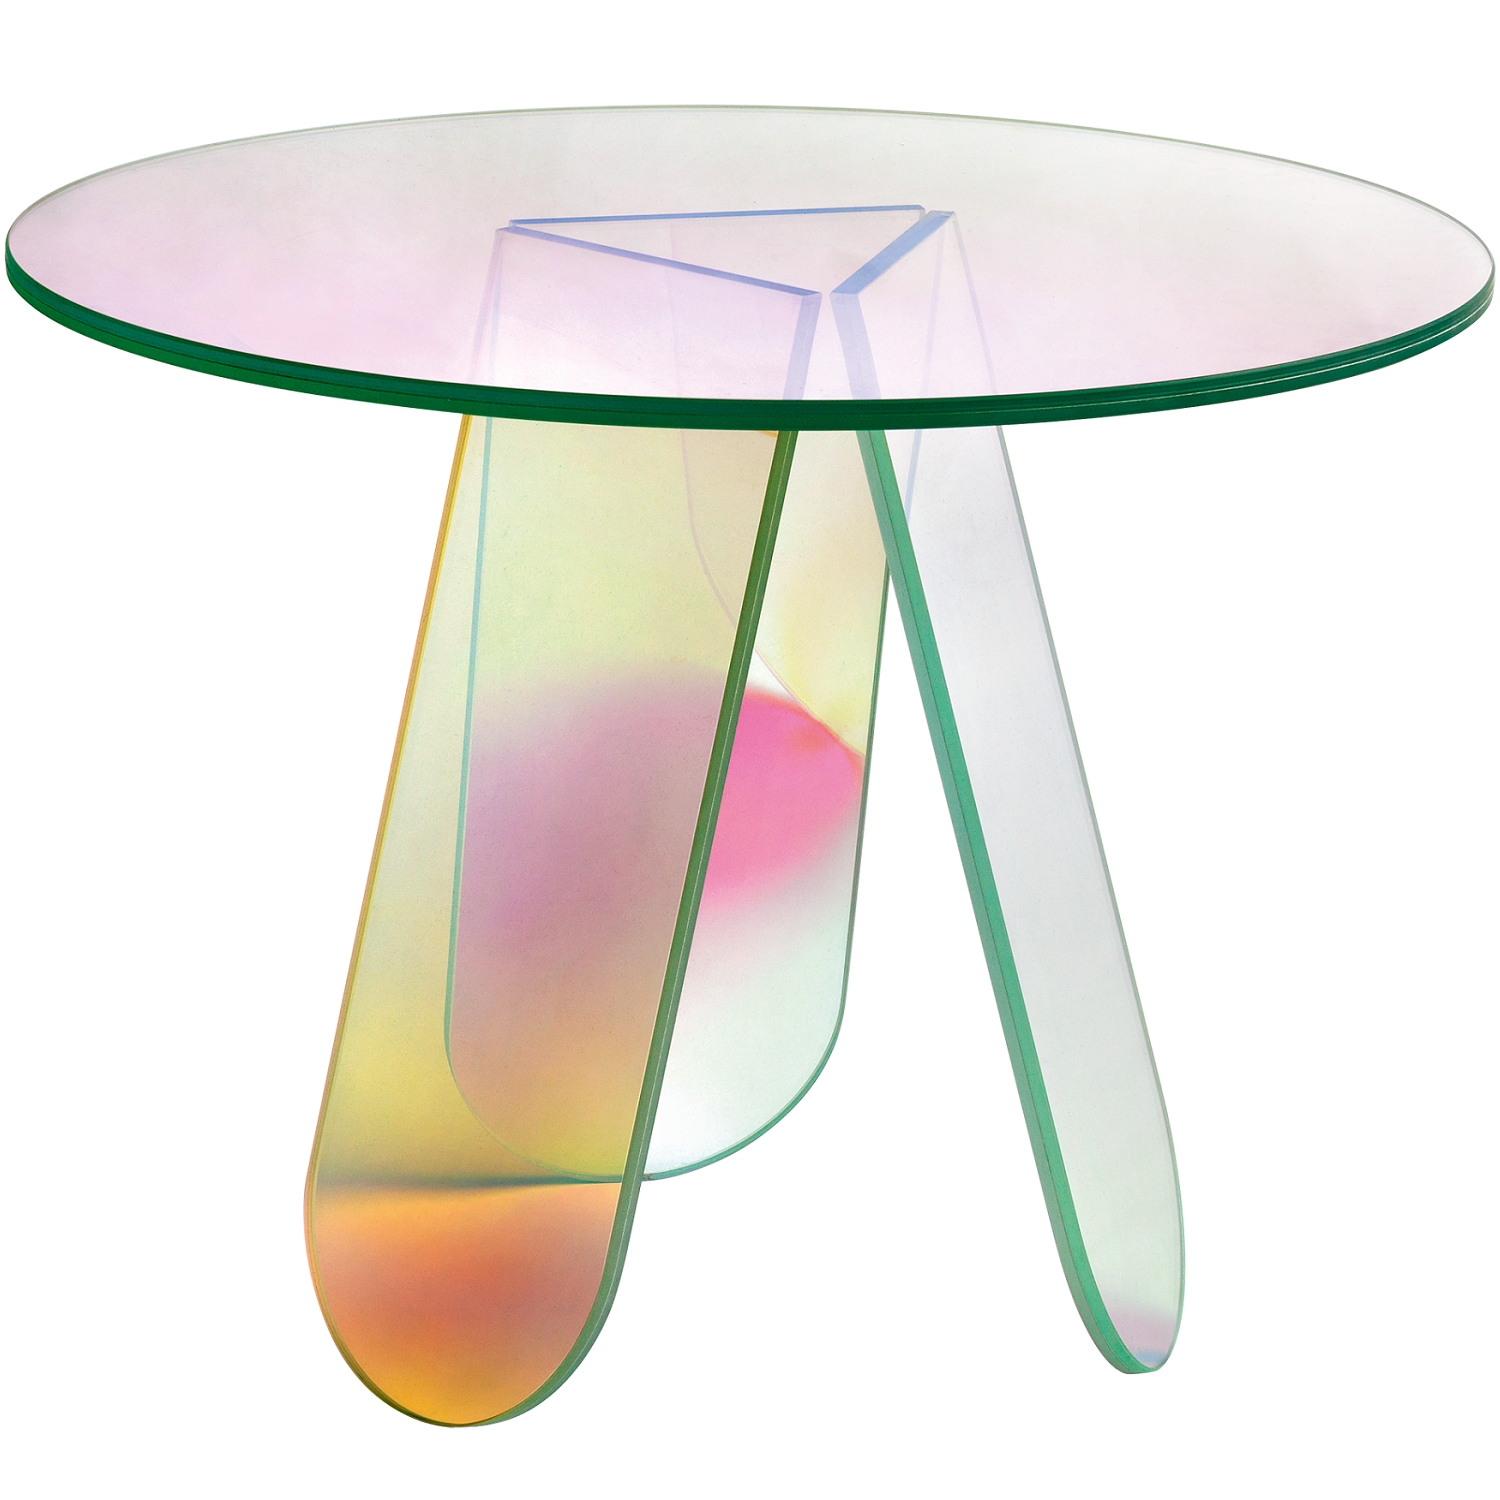 Glas Italia designové jídelní stoly Shimmer (průměr 105 cm)